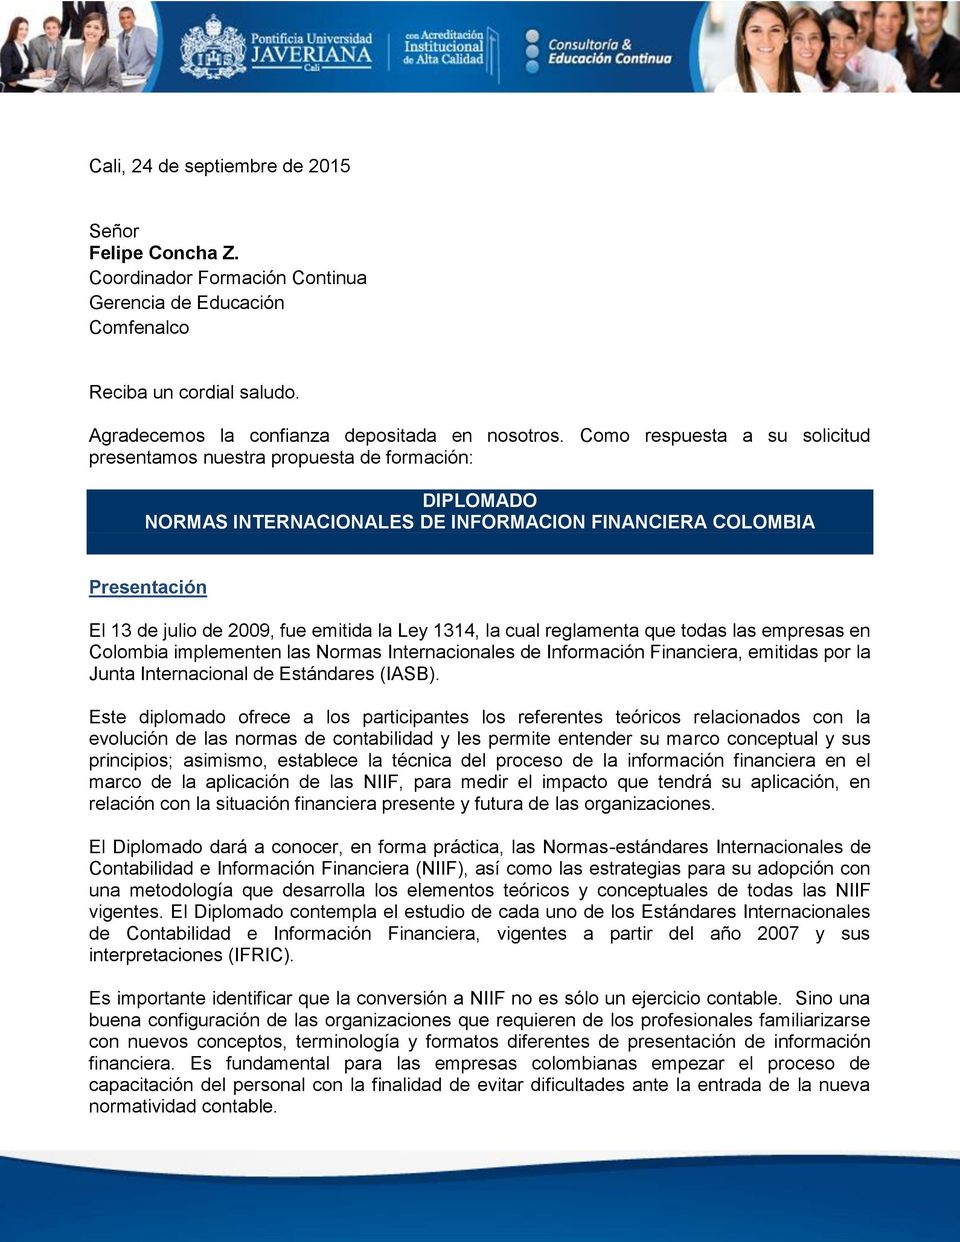 1314, la cual reglamenta que todas las empresas en Colombia implementen las Normas Internacionales de Información Financiera, emitidas por la Junta Internacional de Estándares (IASB).